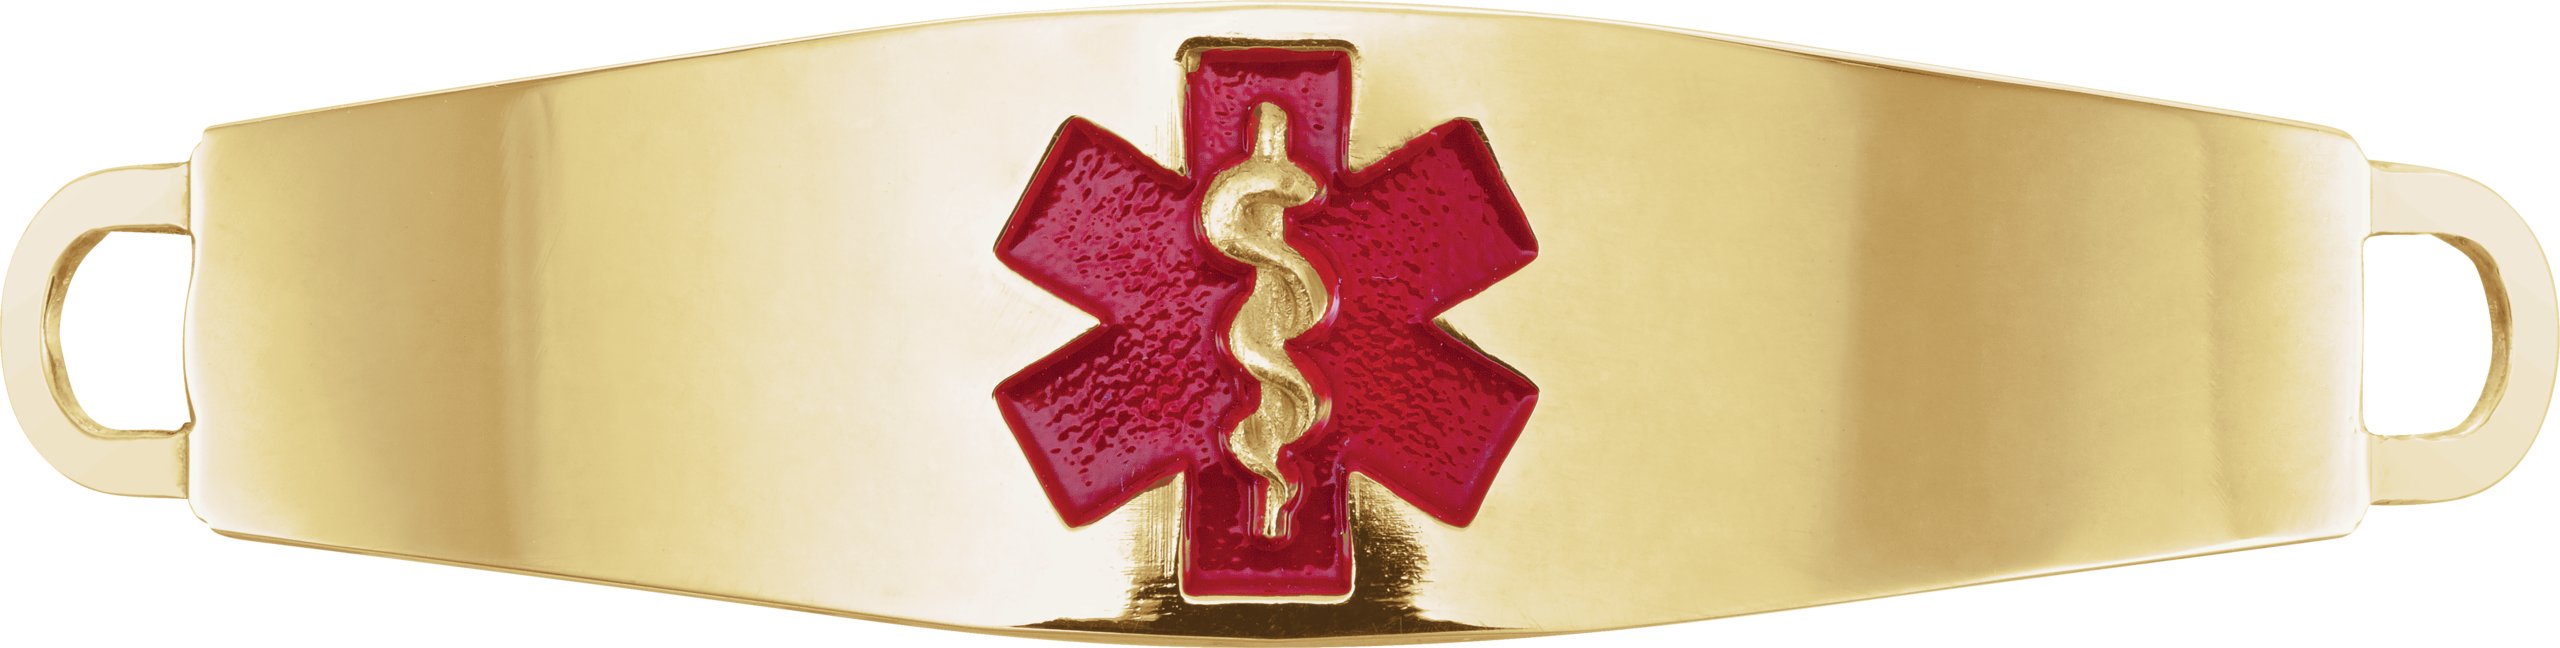 14K Yellow 57.5x14 mm Engravable Red Enamel Medical Identification Bracelet Center